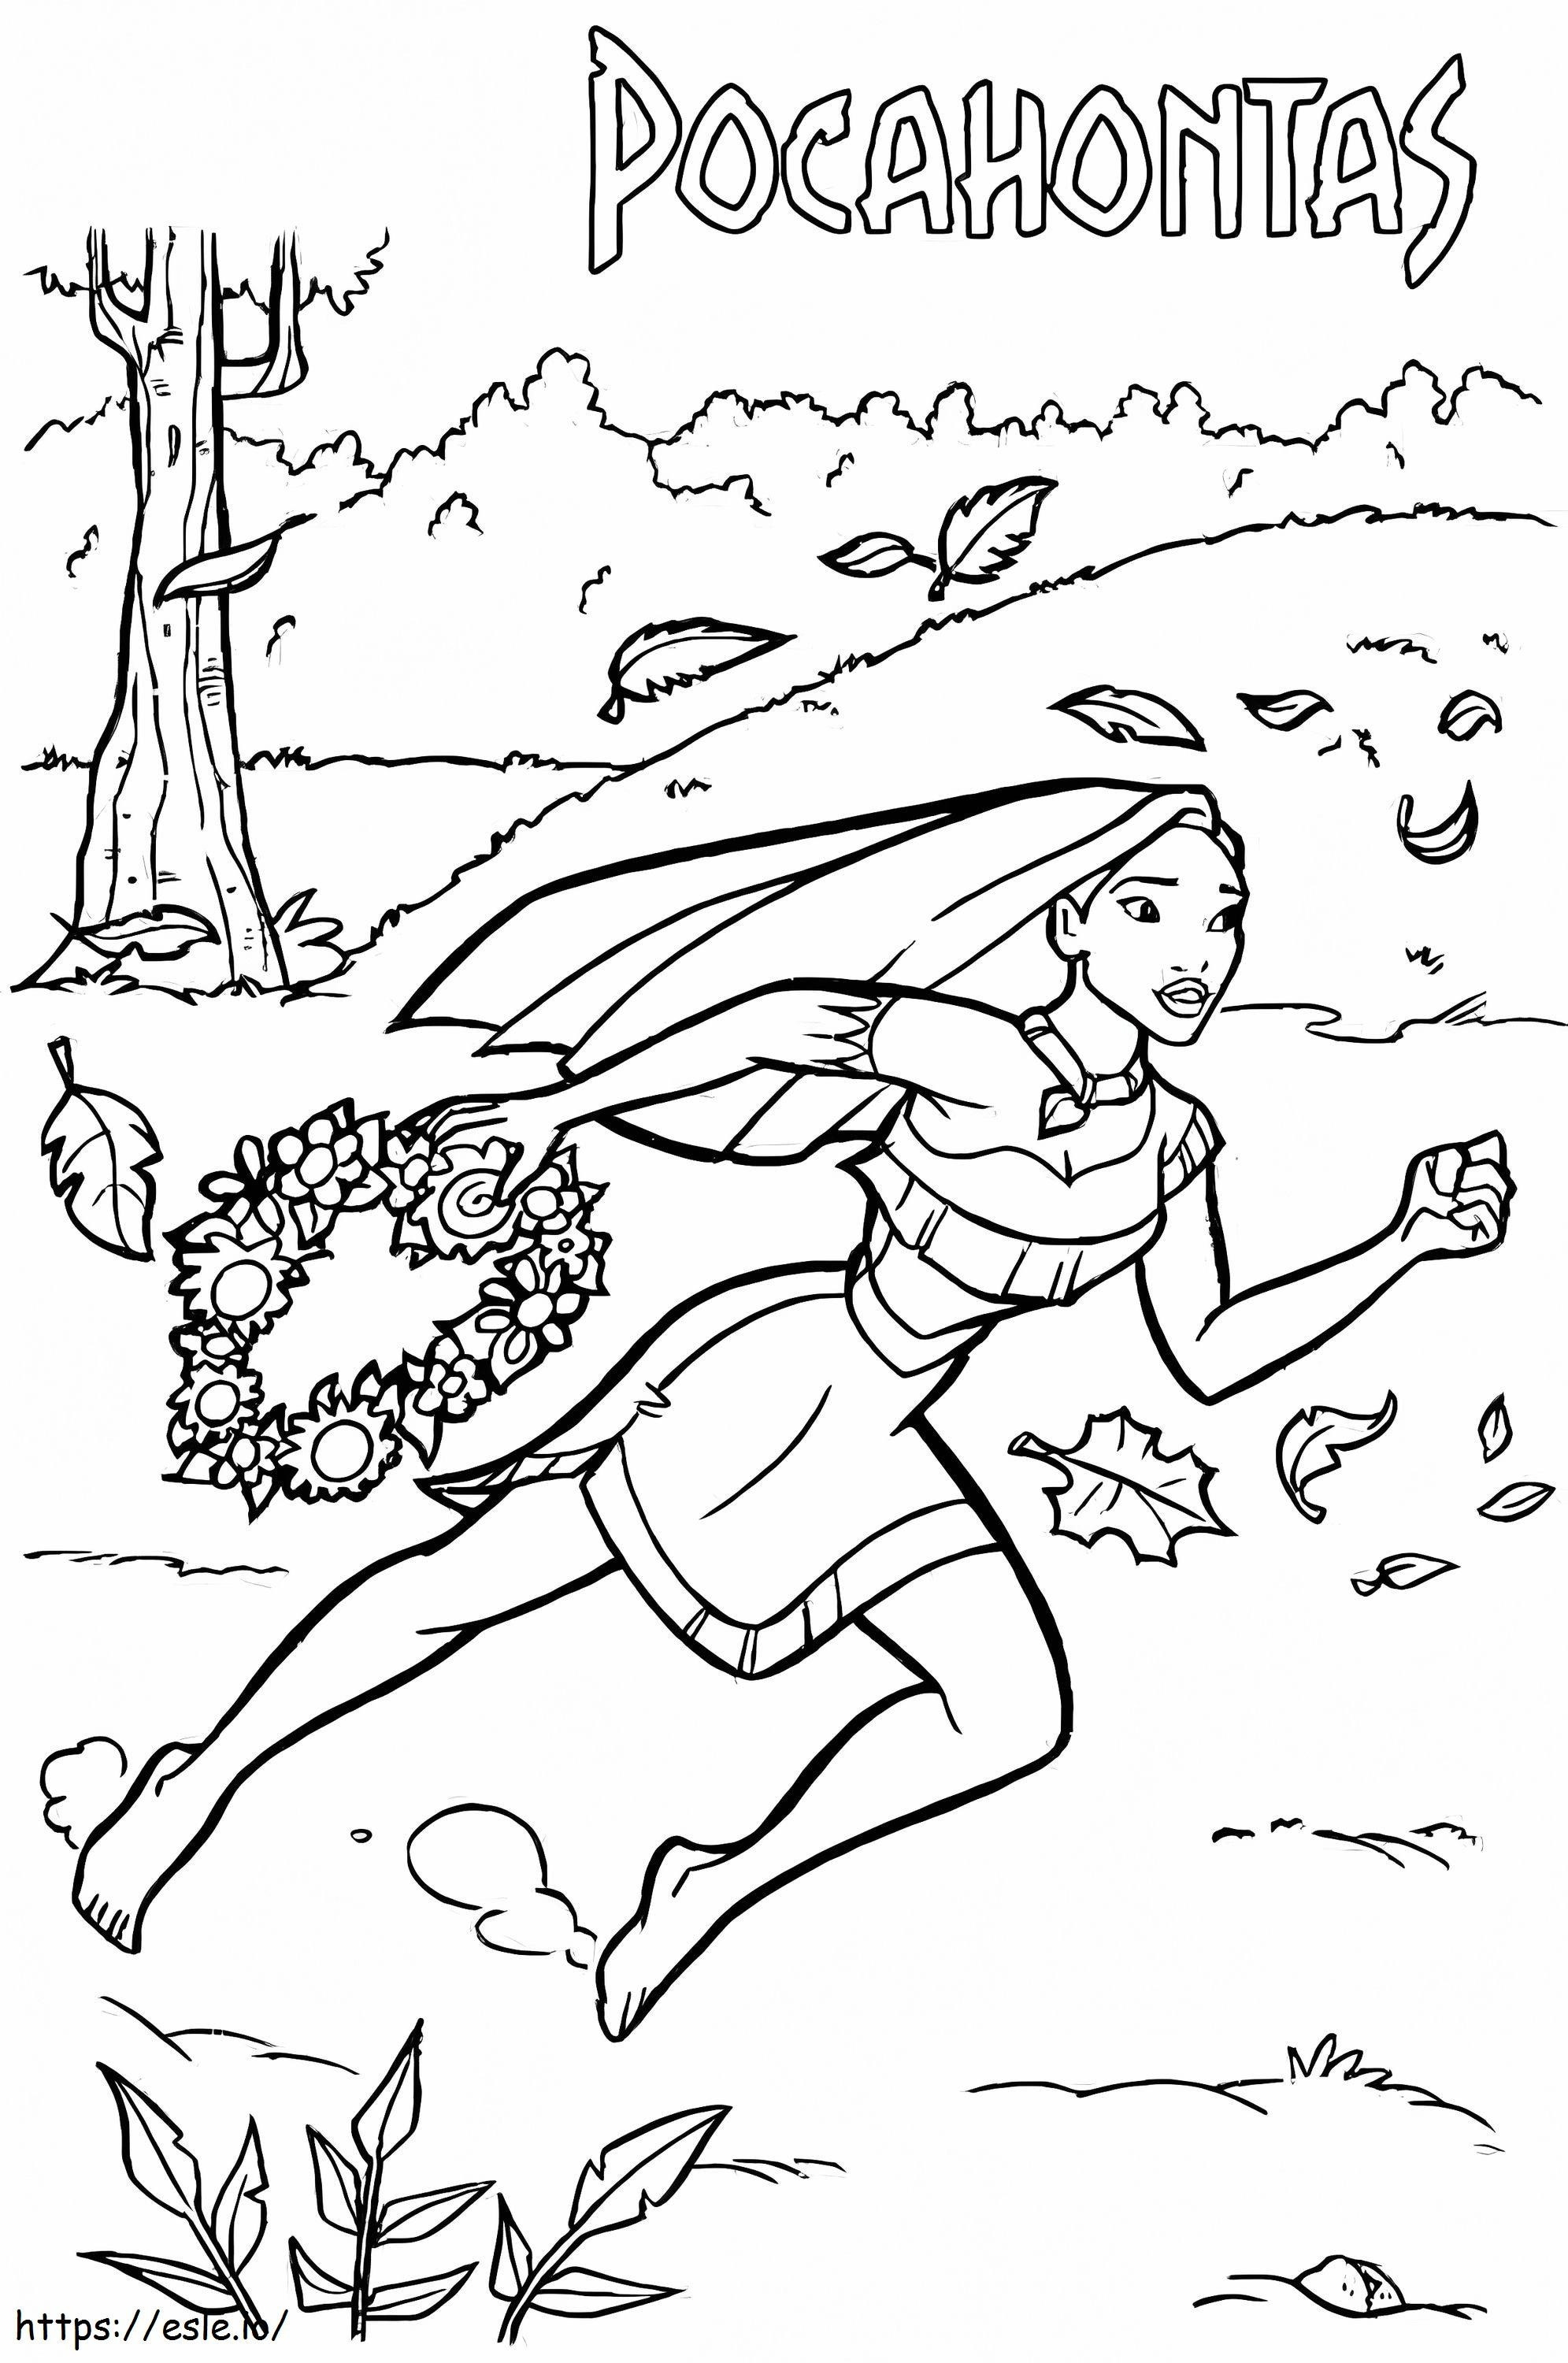 Pocahontas aleargă de colorat